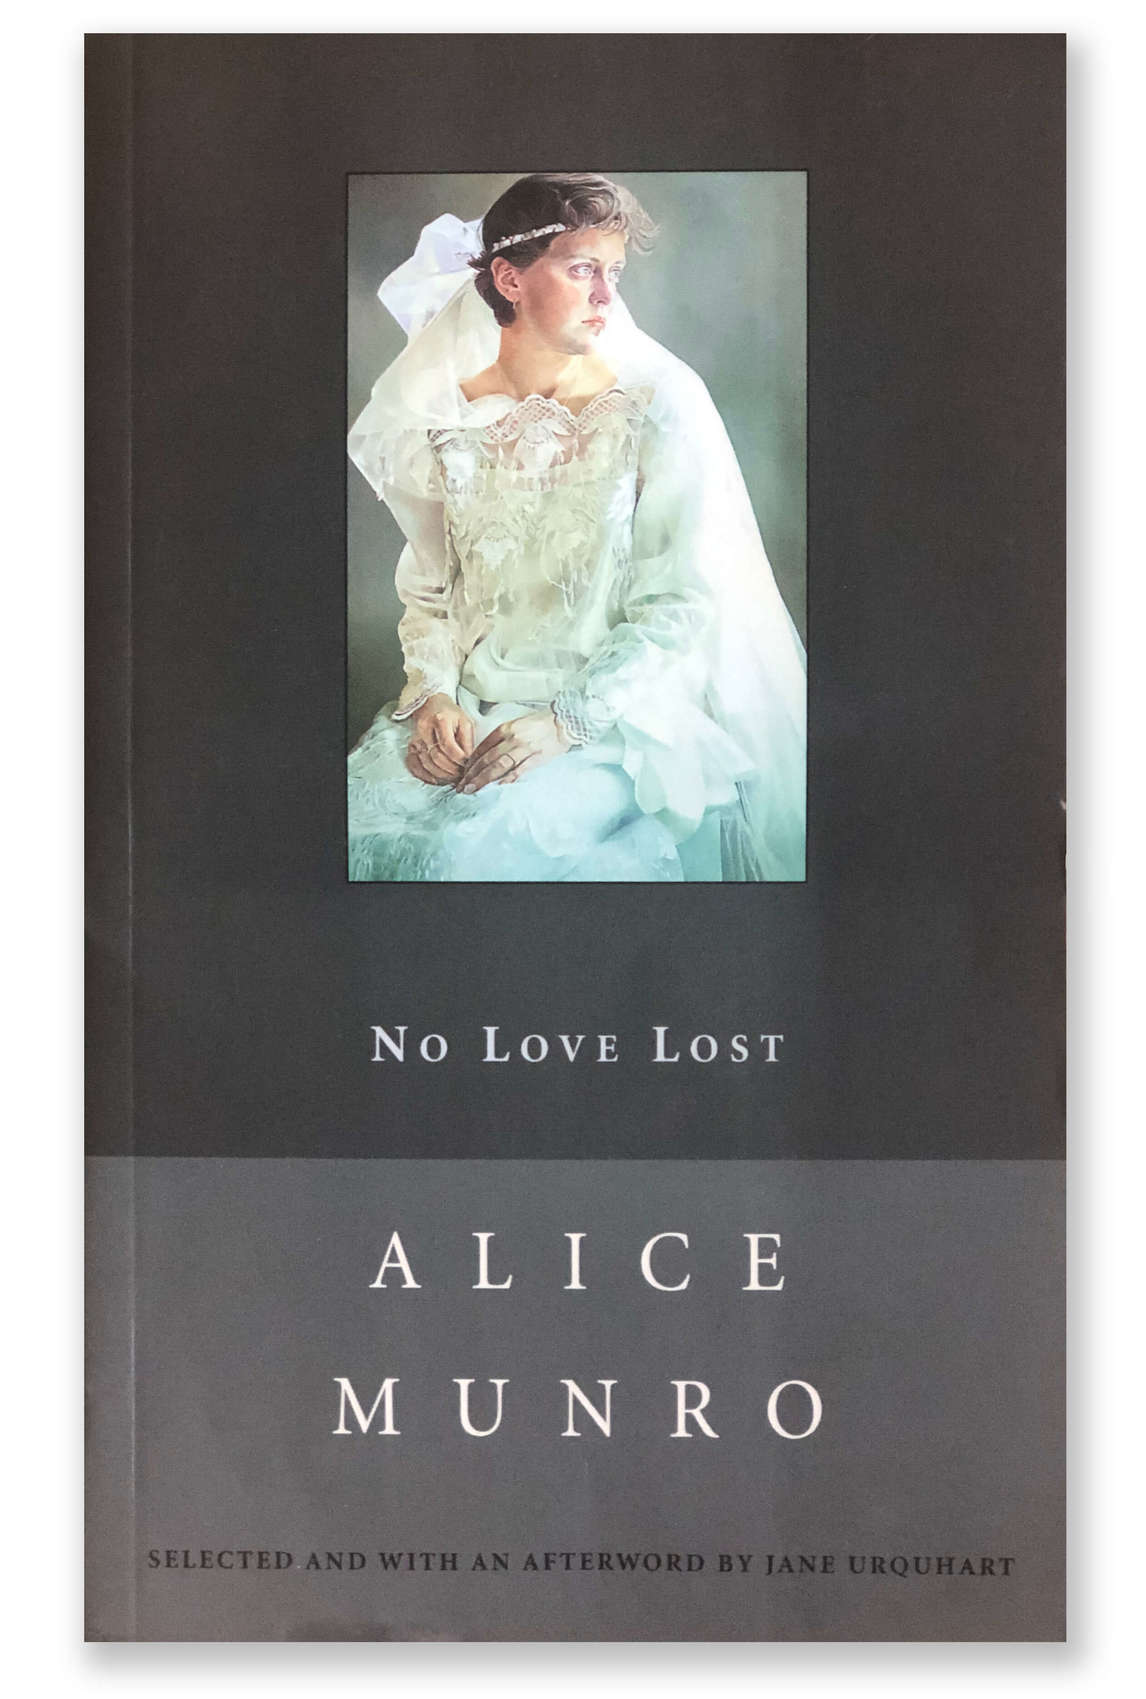 Couverture du recueil de nouvelles d’Alice Munro, No Love Lost (2003)